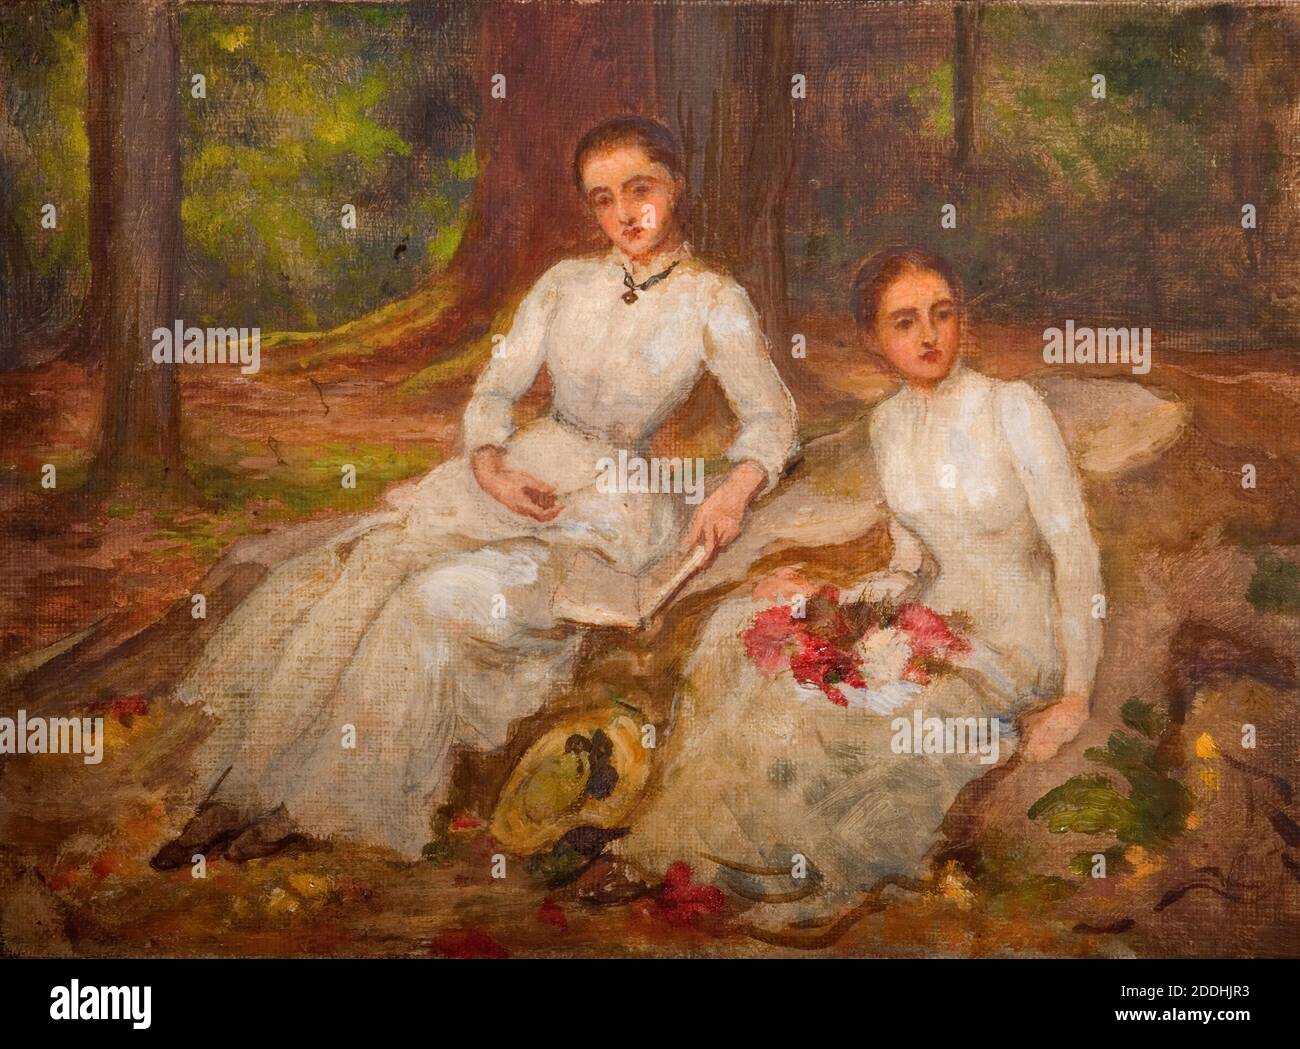 Deux femmes en blanc assis dans une glade boisée, 1900 par Louisa Starr Canziani, peinture à l'huile, femmes, blanc, Forêt, vêtements, Robe Banque D'Images